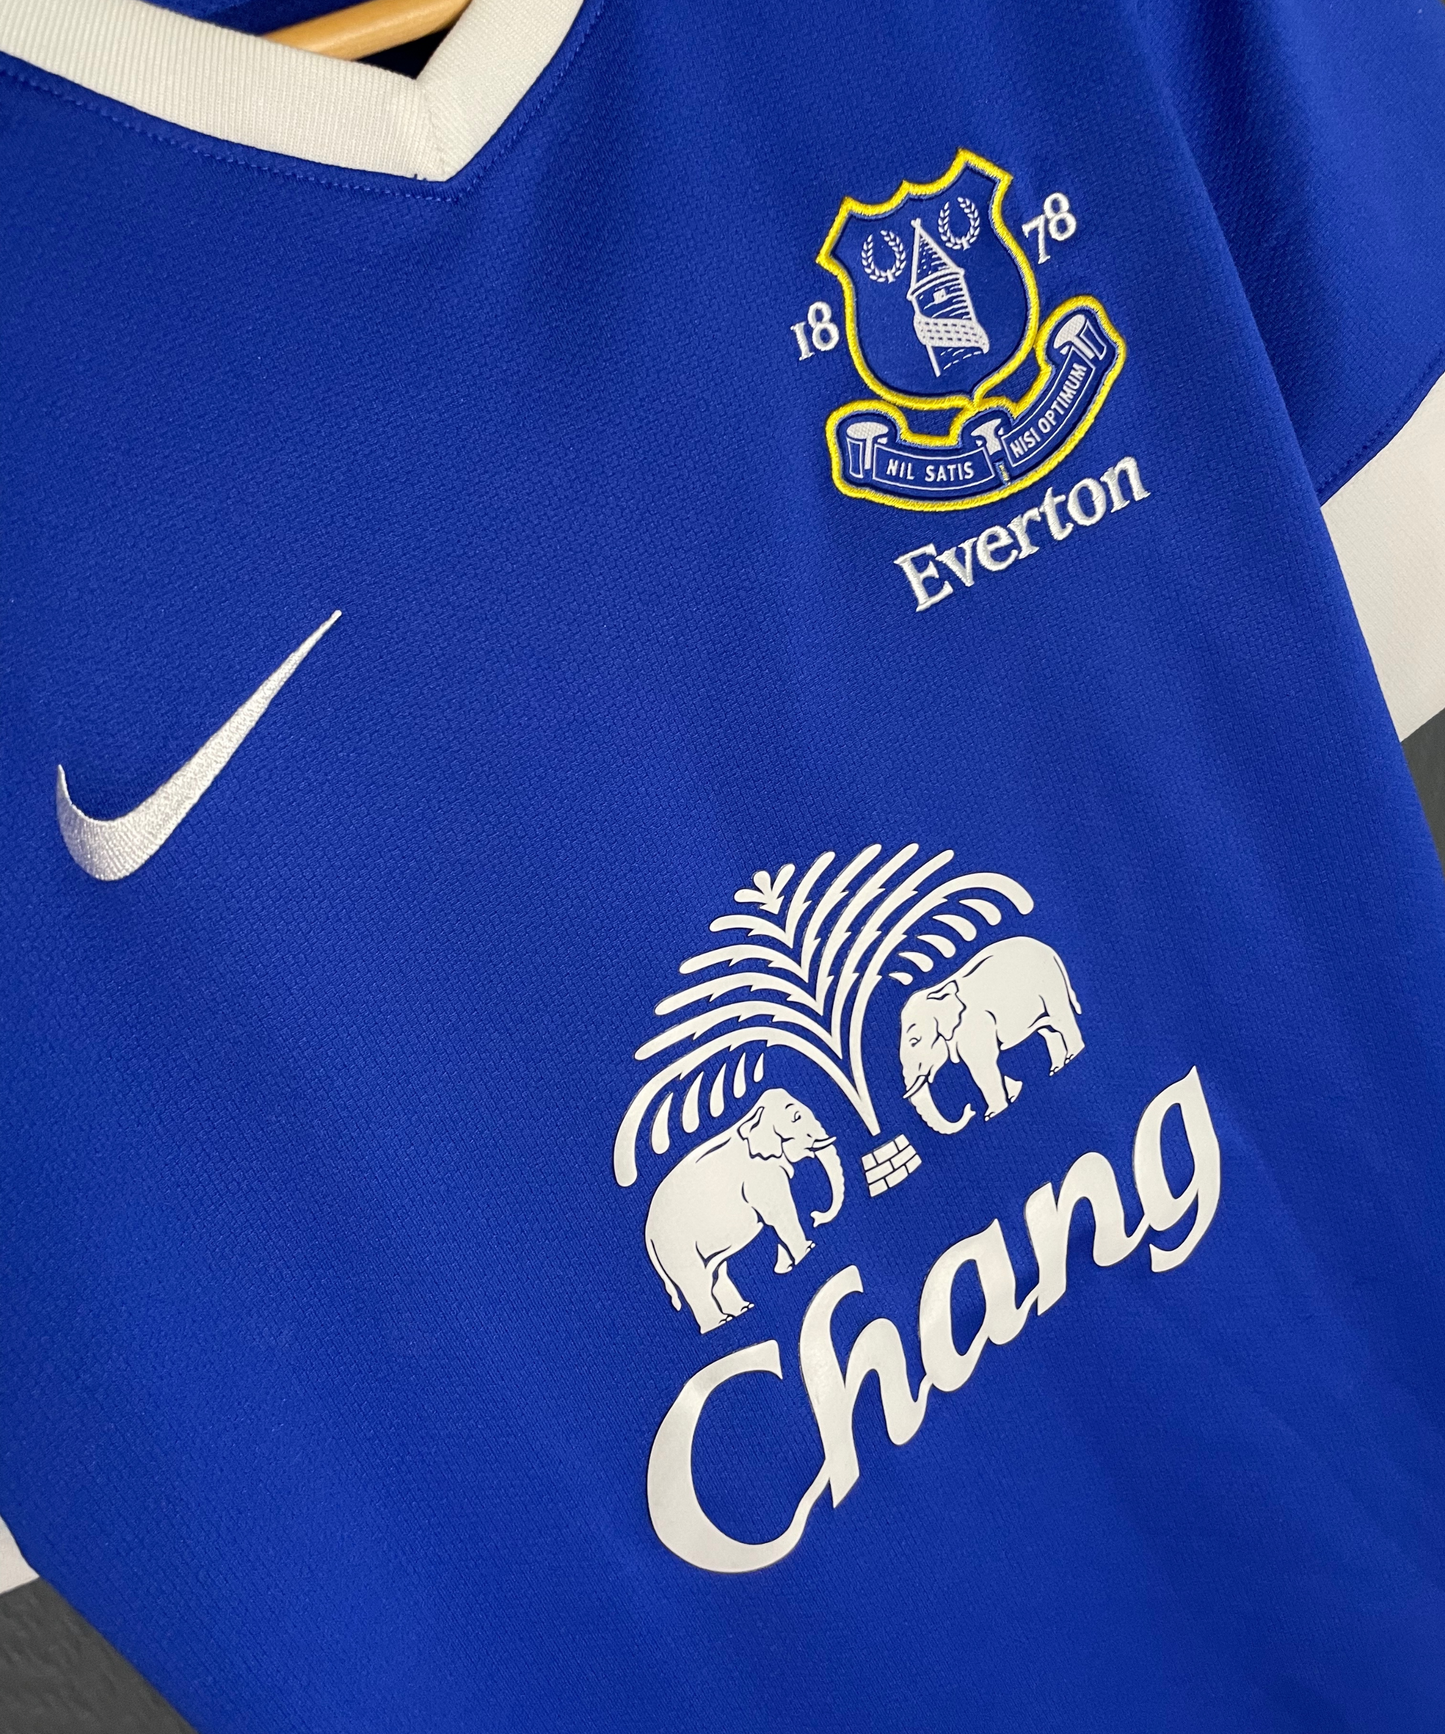 Everton FC 2012/13 Home Kit (M)